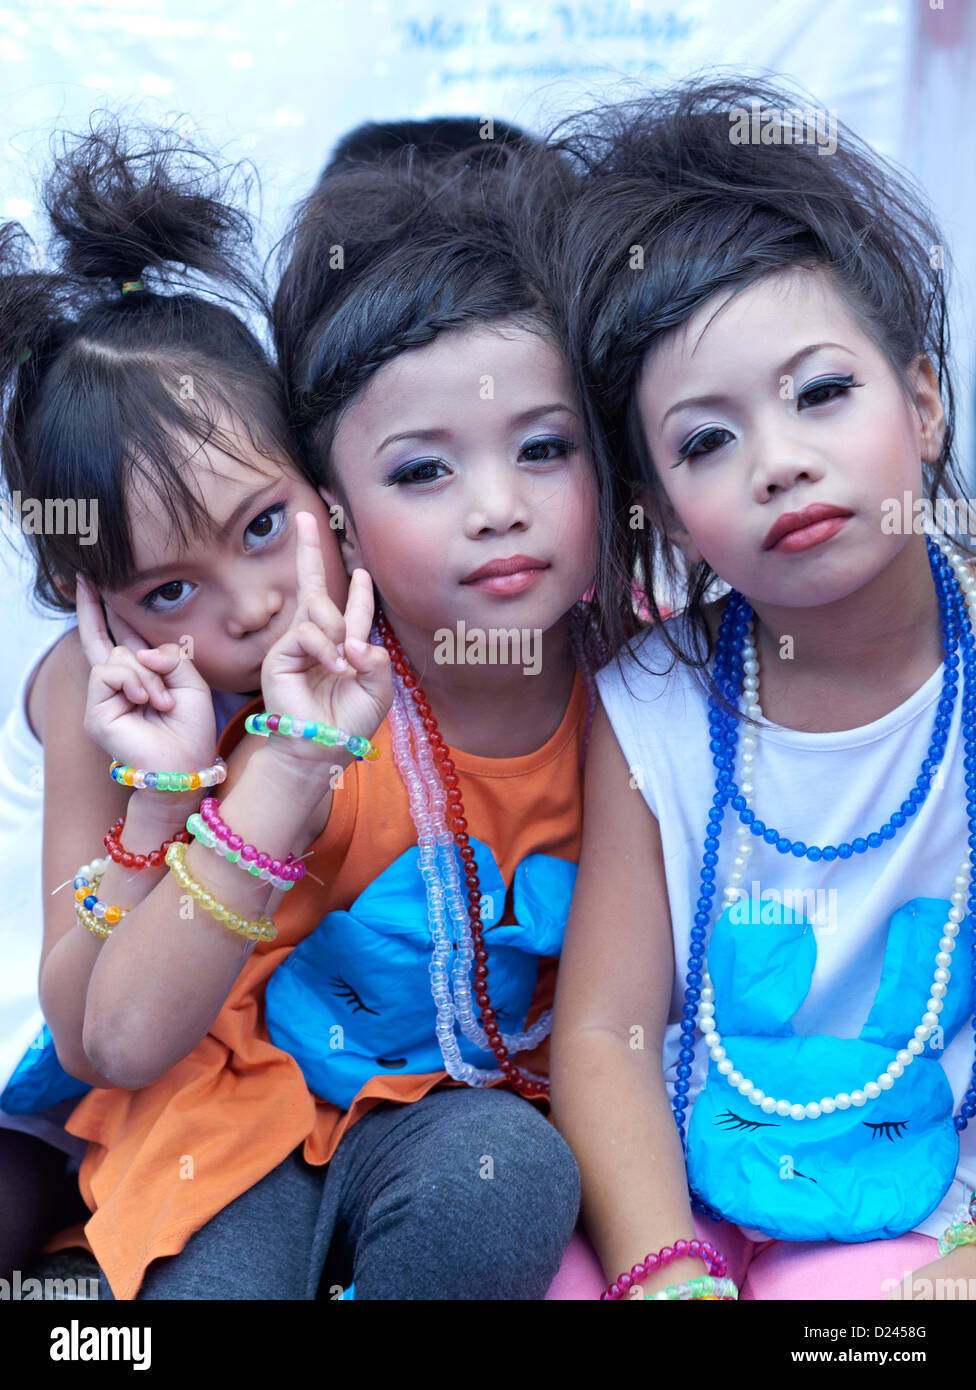 Maquillage pour enfants. Trois jeunes filles thaïlandaises à visage Maquillage pour un événement de la journée de l'enfance. S. E. Asie Thaïlande Banque D'Images